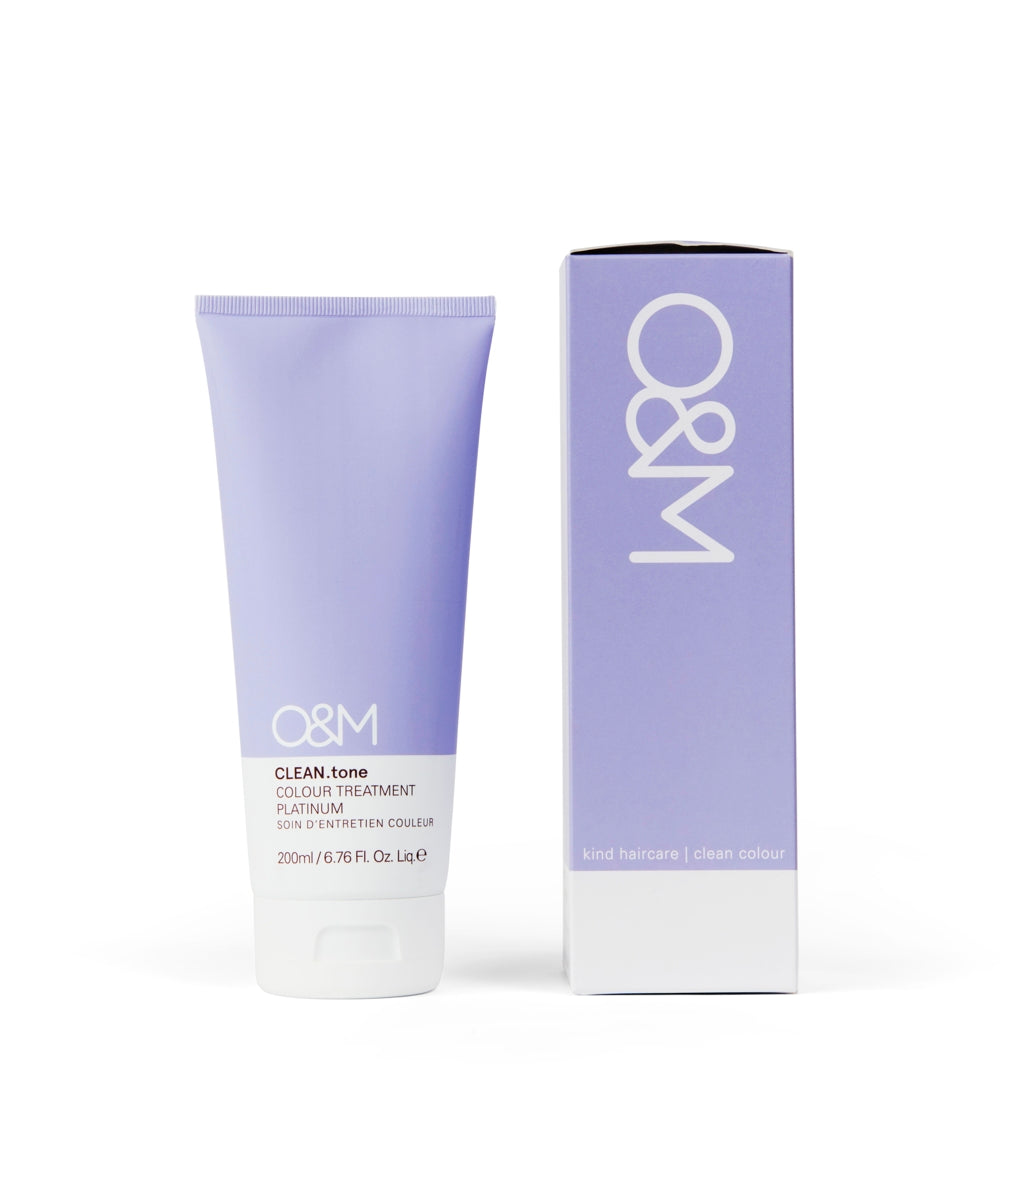 O&M CLEAN.tone Platinum Colour Treatment 200ml